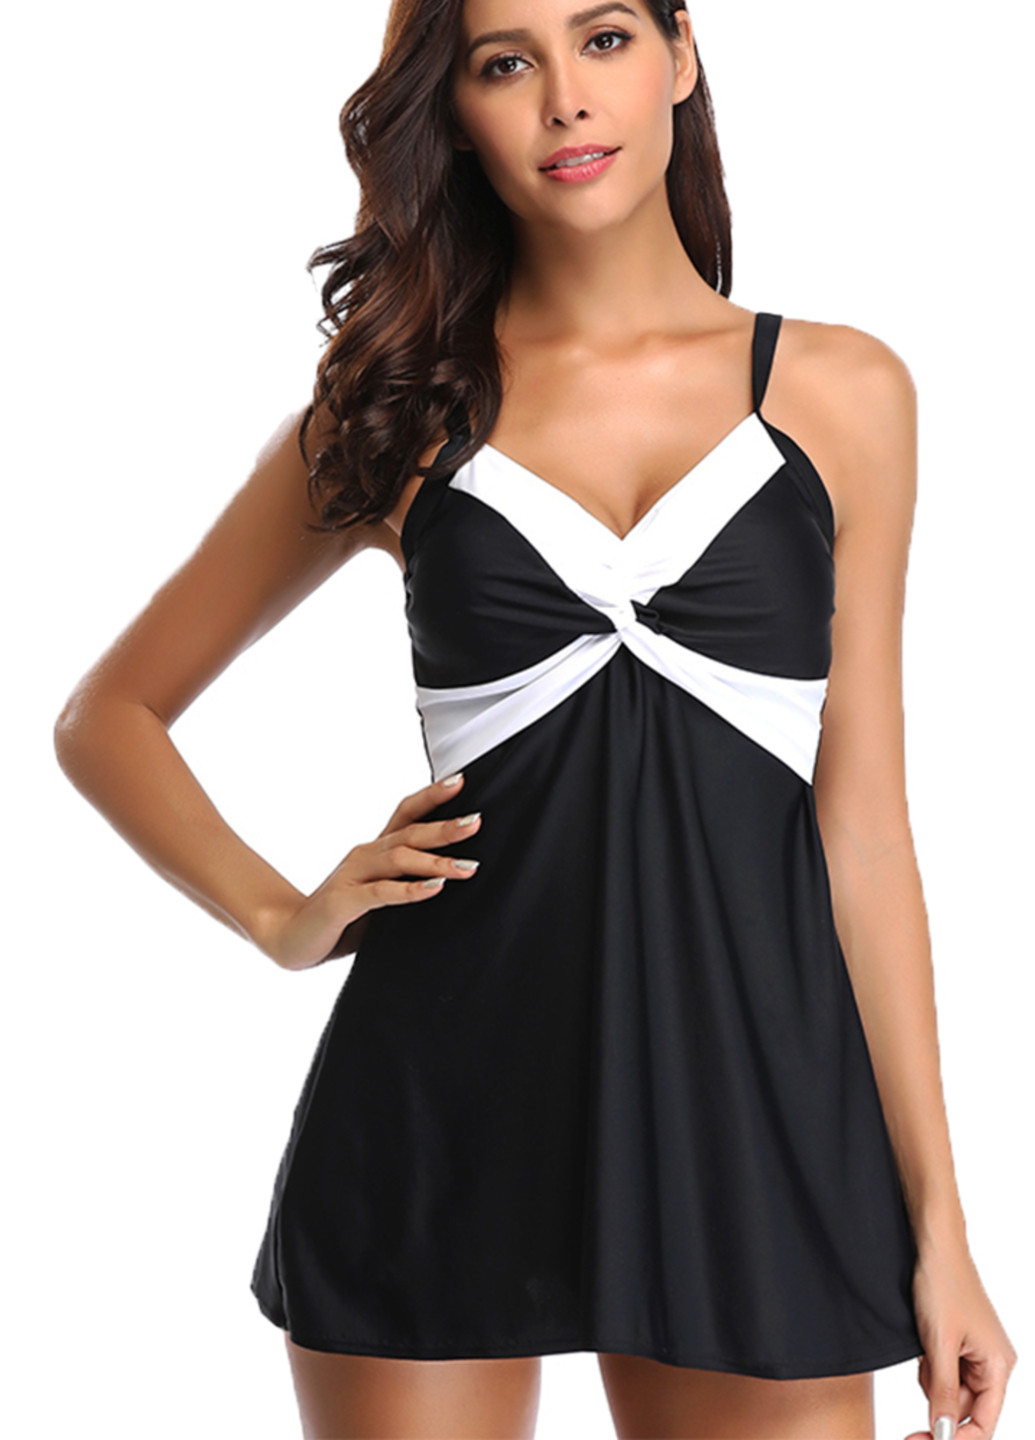 Черно-белый демисезонный 9008 купальник платье с шортами черный с белыми вставками купальник-платье Ods